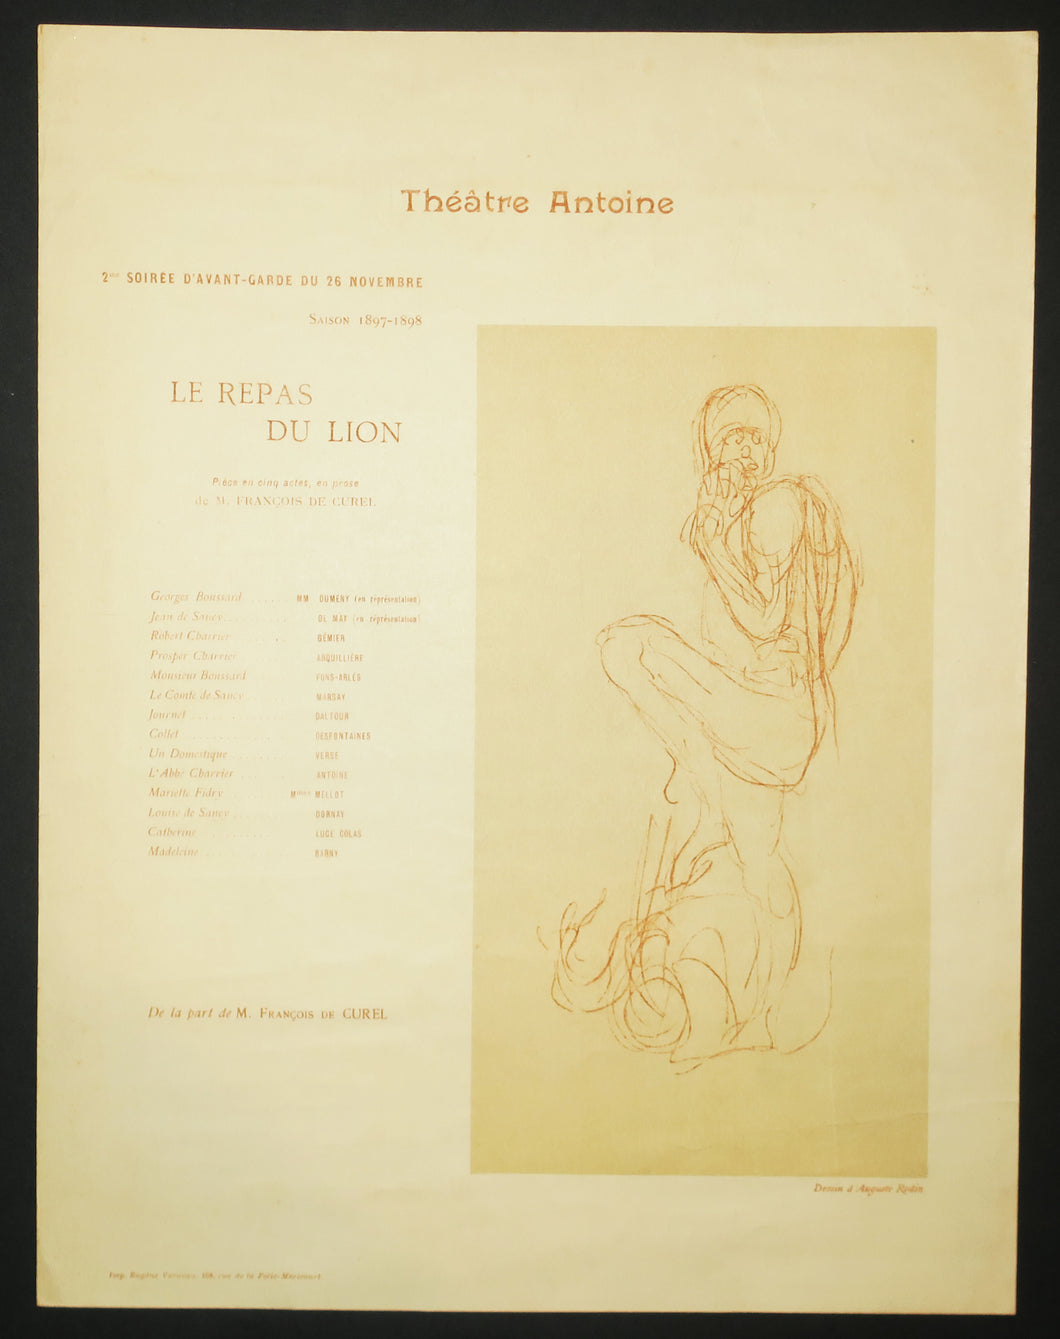 Le Repas du lion: Programme pour le Théâtre Antoine de la 2ème soirée d'avant-garde du 26 novembre, Saison 1897-1898.